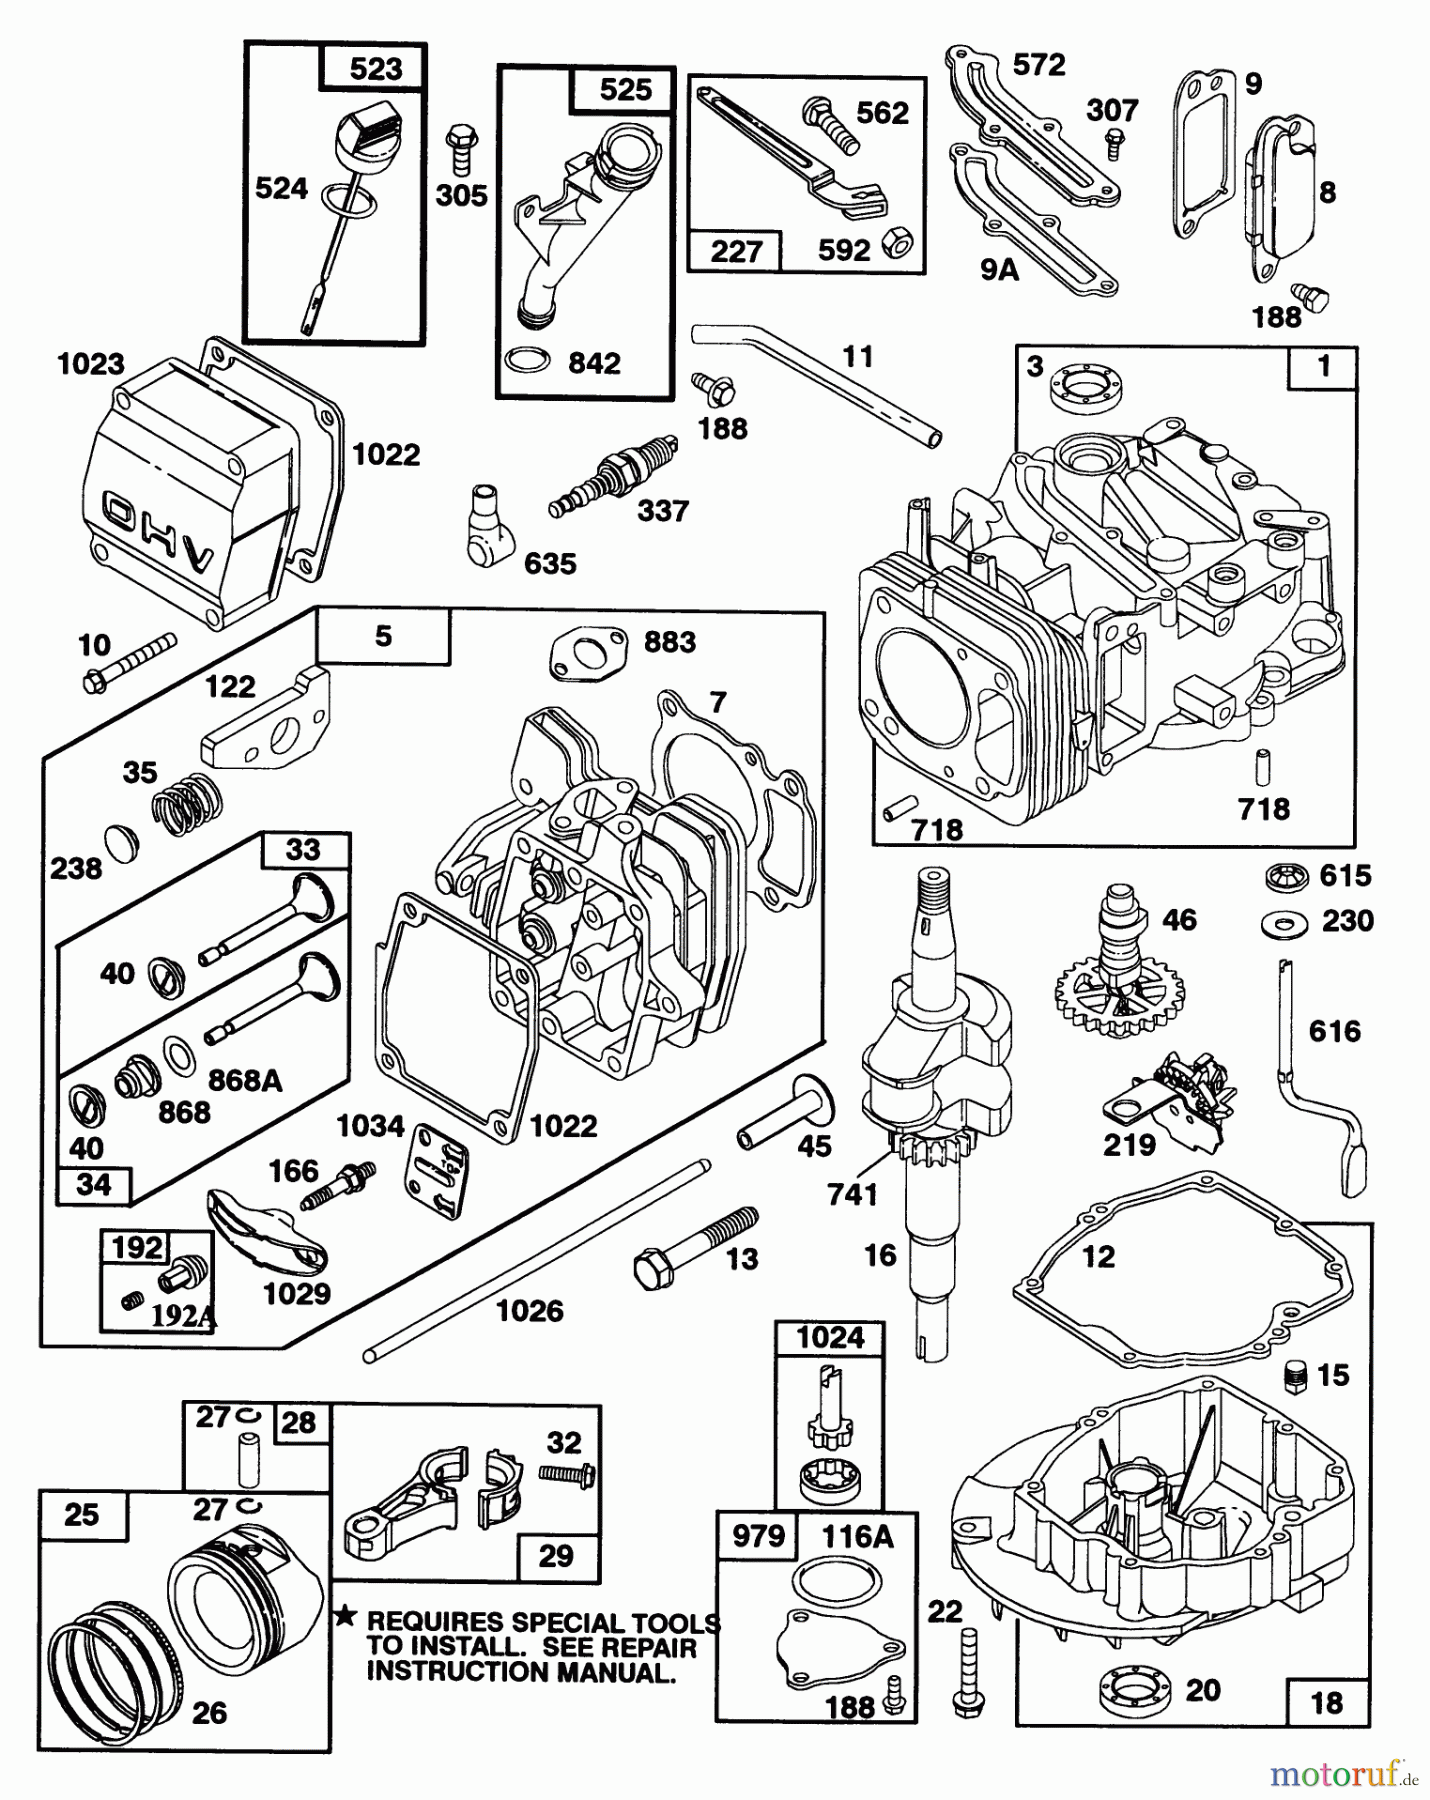  Toro Neu Mowers, Walk-Behind Seite 2 27500 - Toro Lawnmower, 1992 (2000001-2999999) ENGINE GTS-150 77-8980 #1